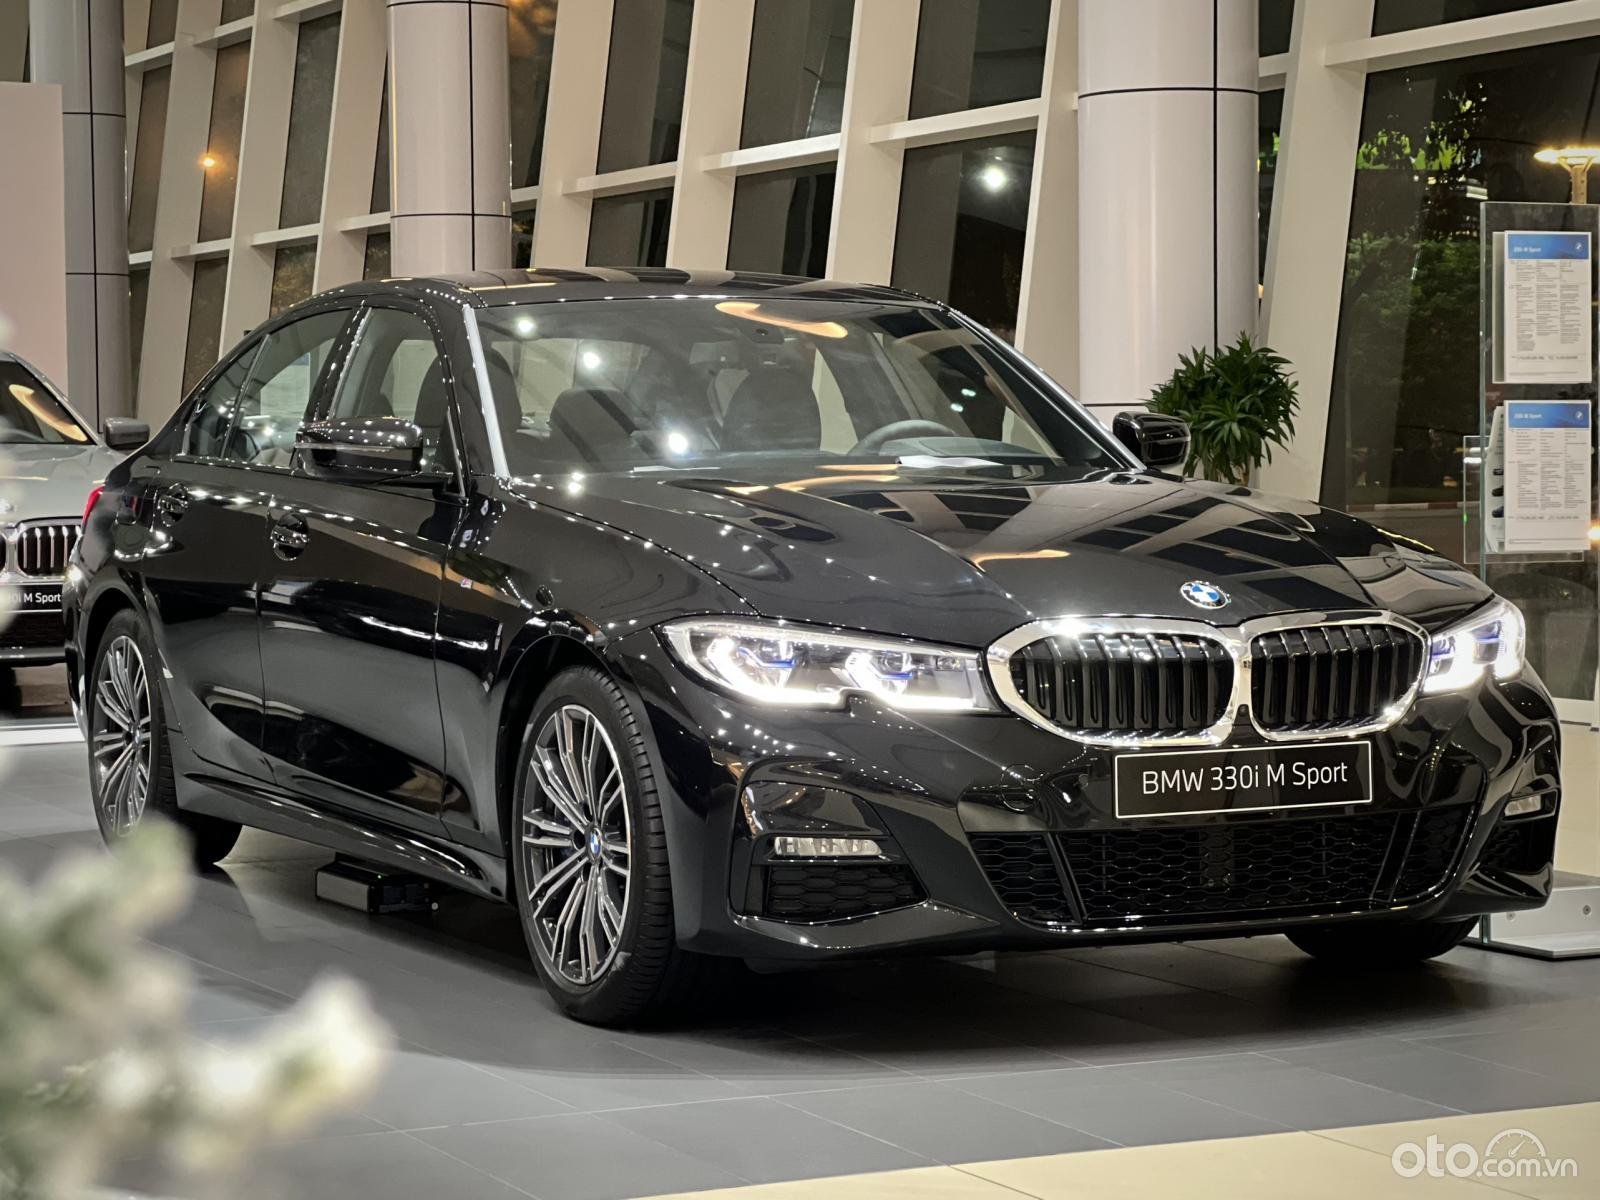 Chủ xe chi 1 tỷ đồng nâng cấp BMW 330i M Sport tại Sài Gòn Riêng bộ mâm và  phanh giá gần 500 triệu